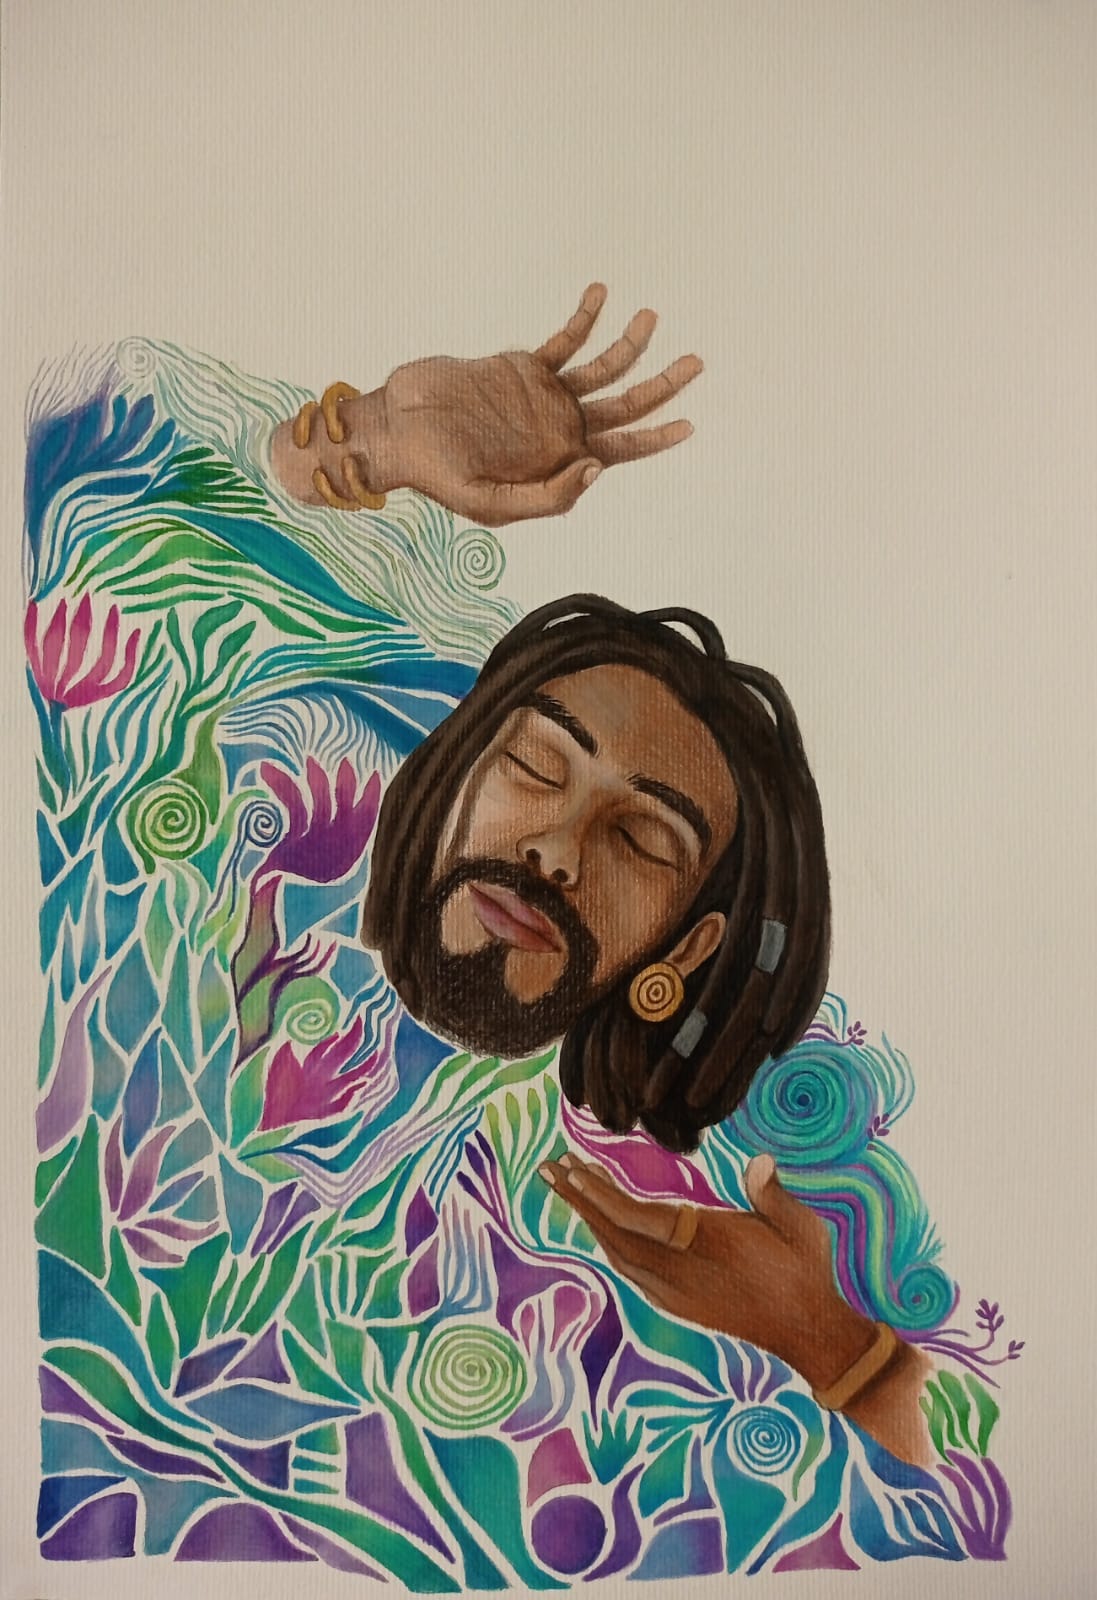 Ilustração de um homem negro com dreads e joias douradas com rosto sereno, olhos fechados envoltos em curvas que parecem corais em tons de azul, verde, rosa e lilás. ele tem uma de suas mãos abertas ao lado do rosto